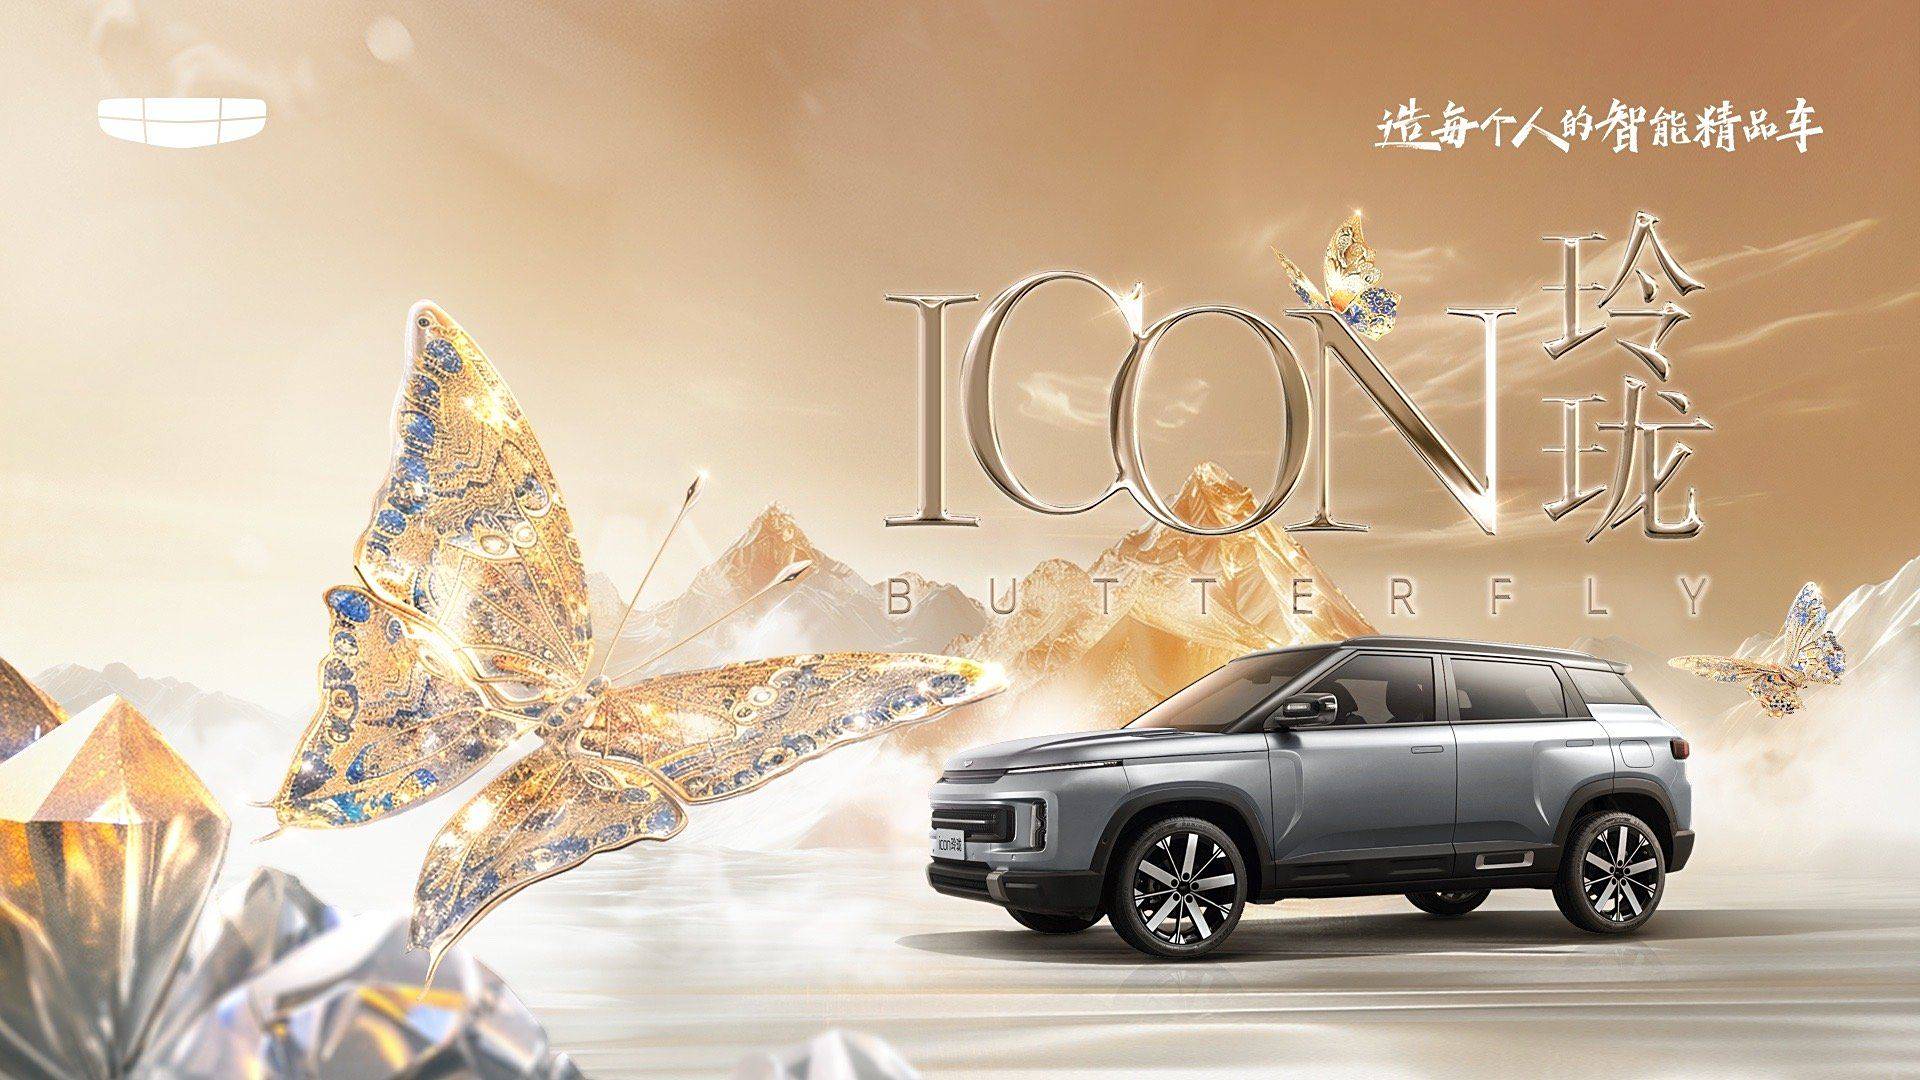 或者入门级车型吉利ICON玲珑将于5月25日上市_搜狐汽车_ Sohu.com。